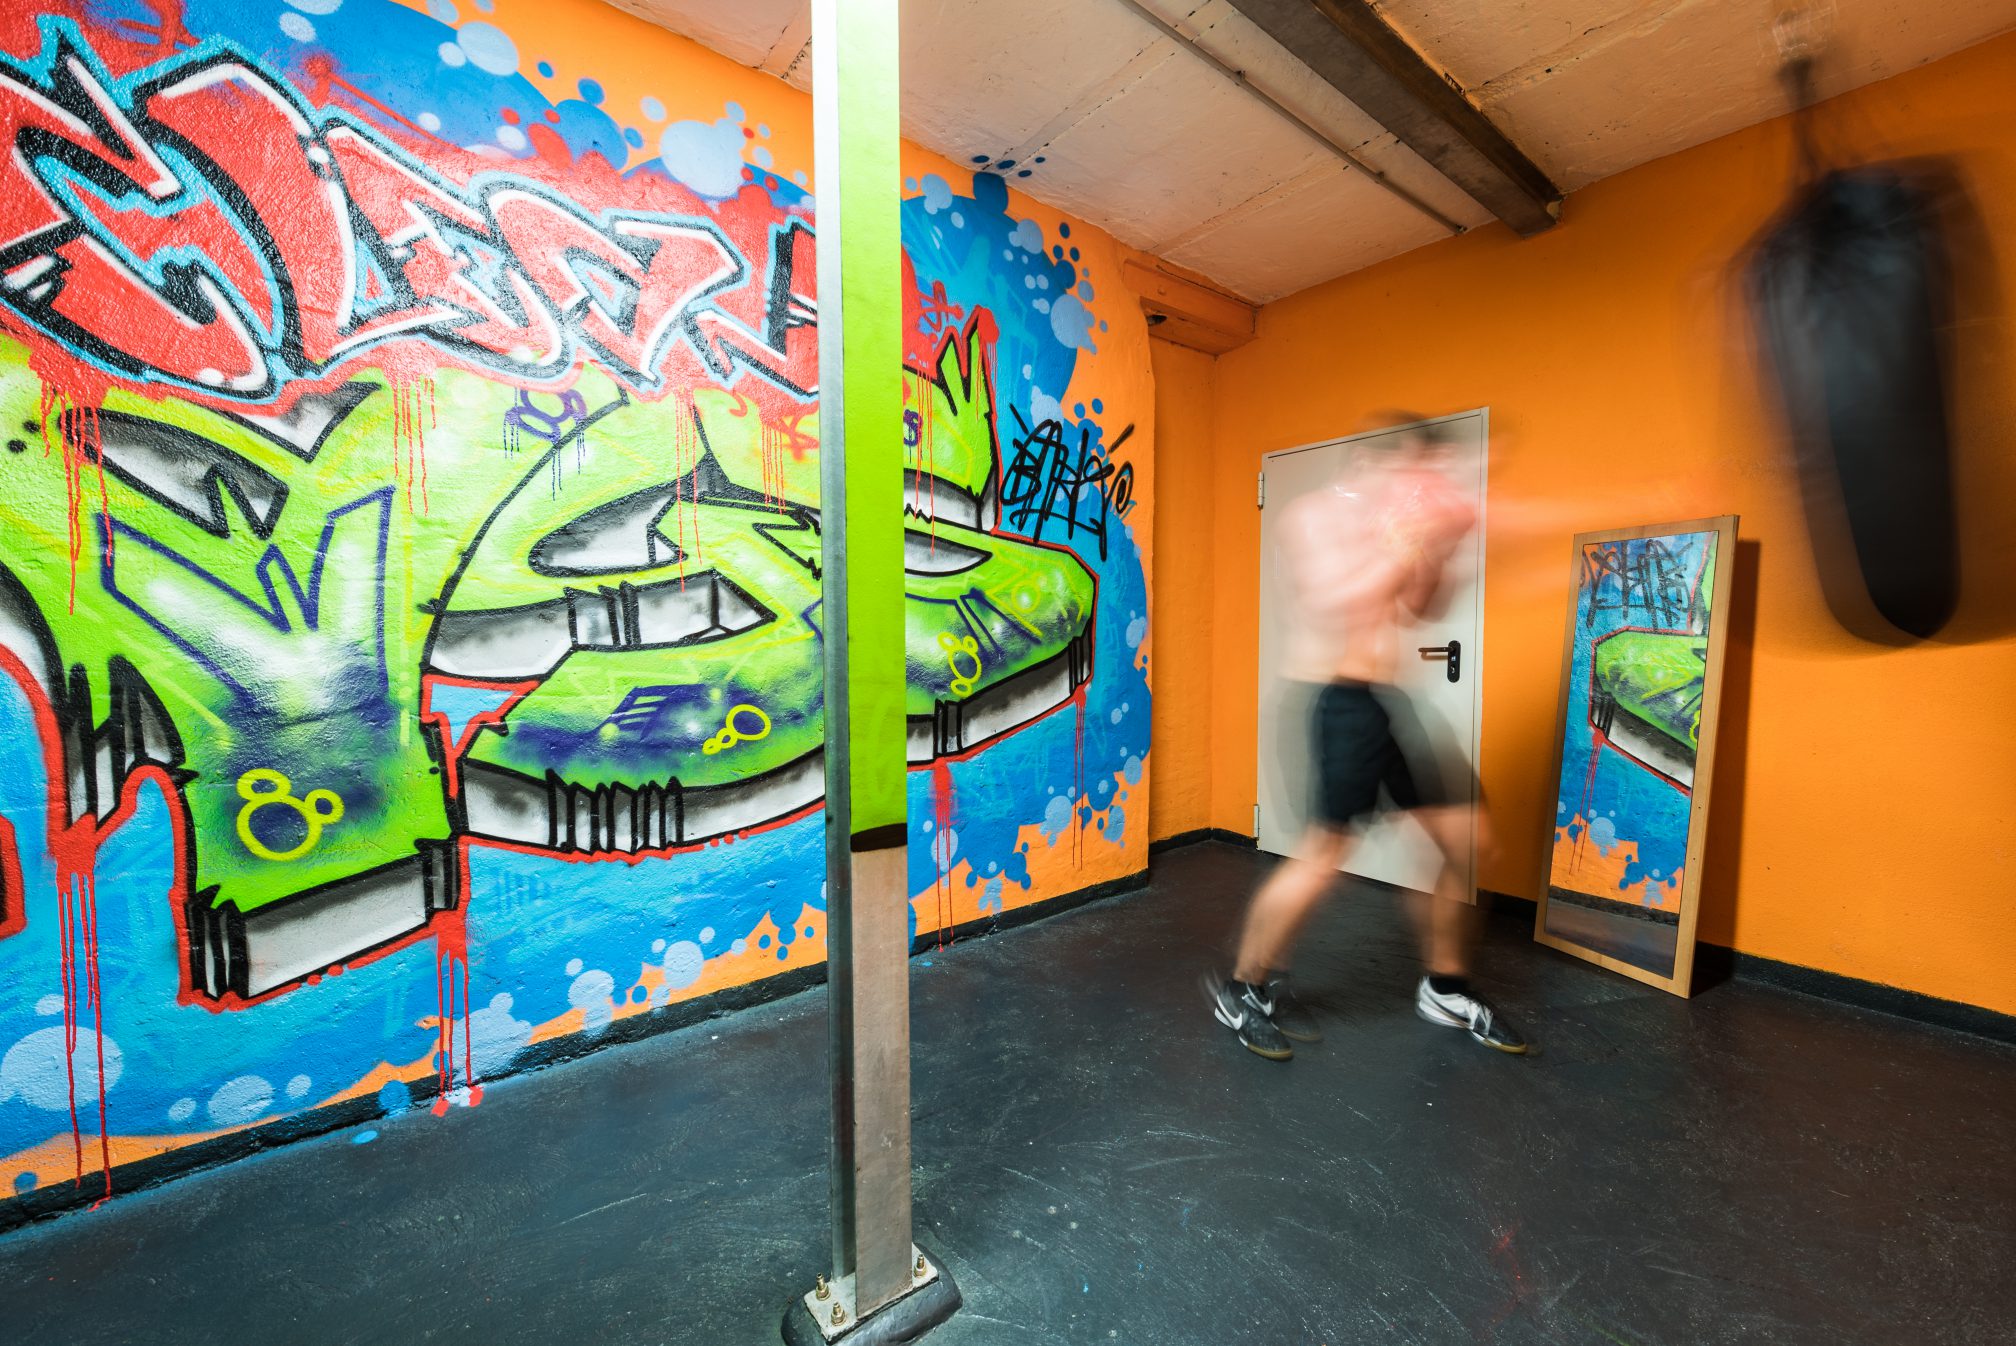 Sportaktivität Boxen für Klienten im Fitnessraum der Clean WeGe - Impression aus der PLUS-Stadt Stuttgart